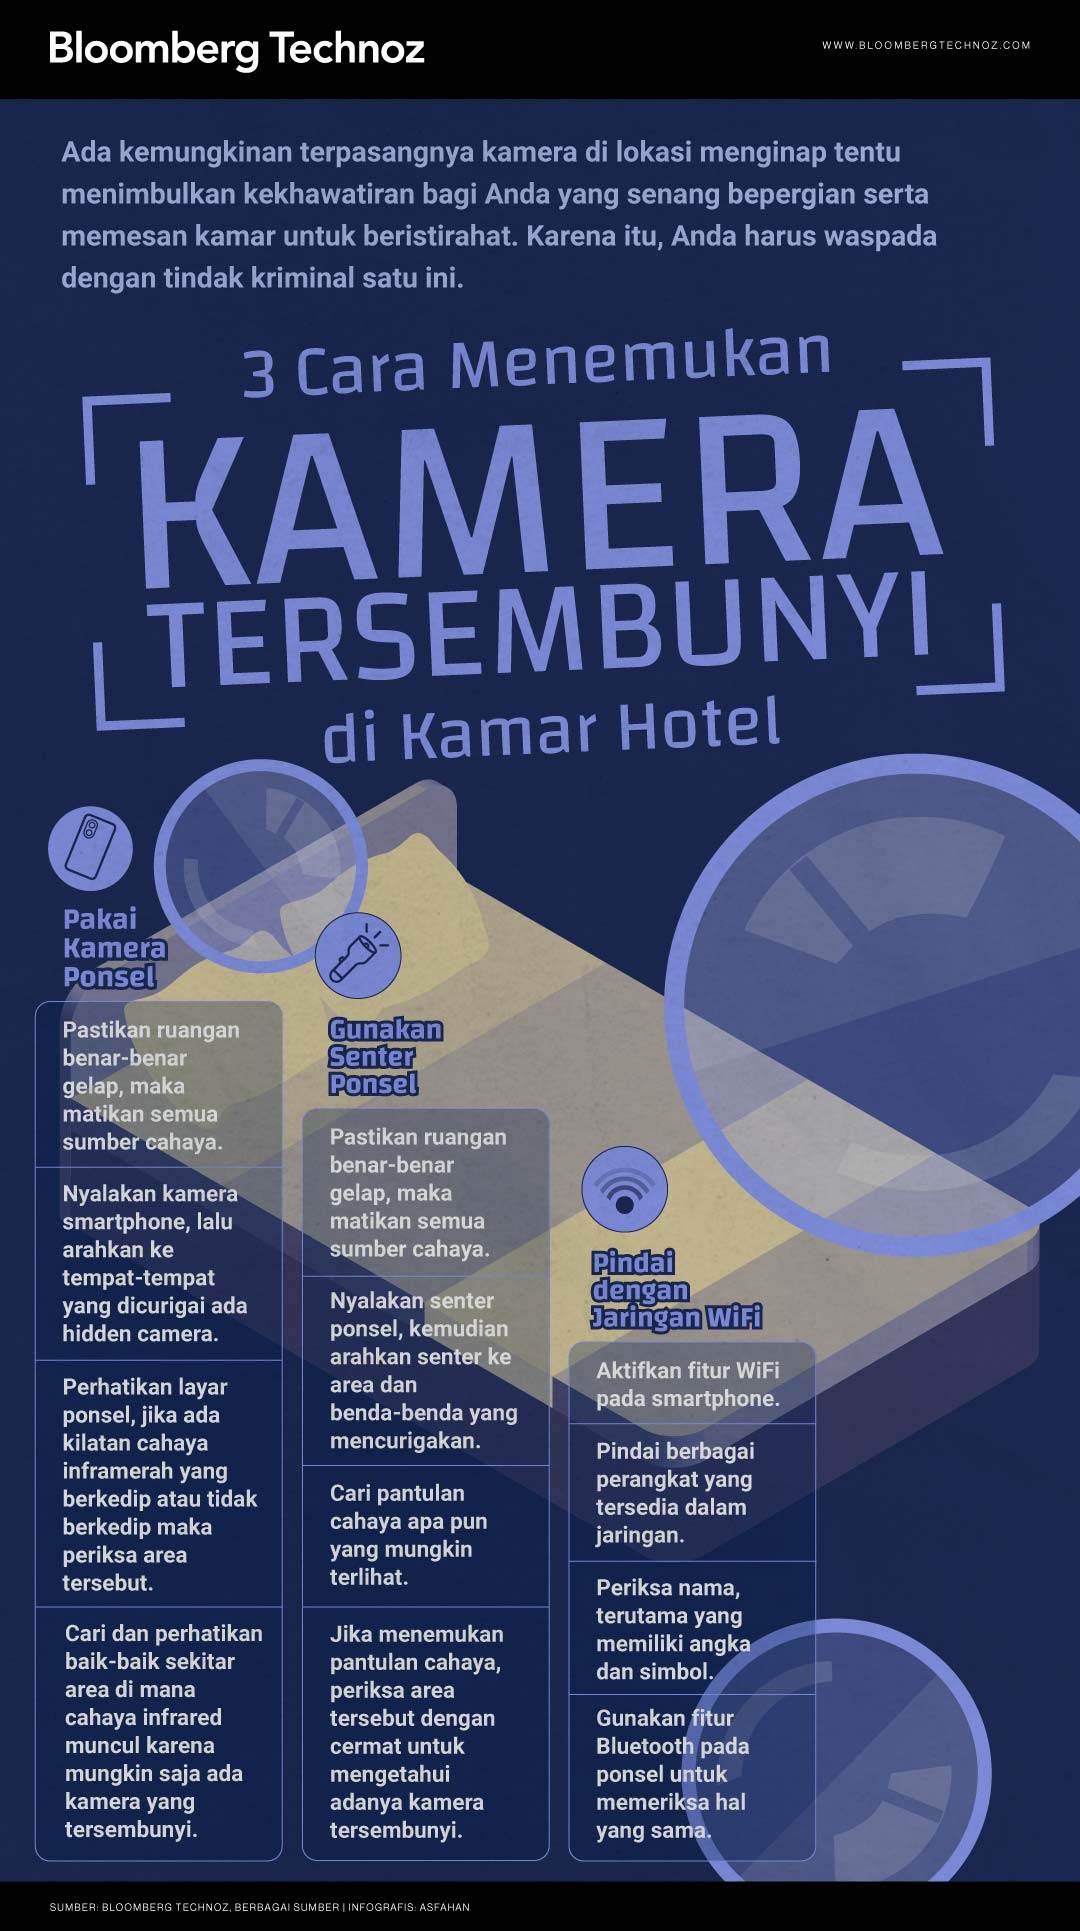 3 Cara Menemukan Kamera Tersembunyi di Kamar Hotel (Asfahan/Bloomberg Technoz)